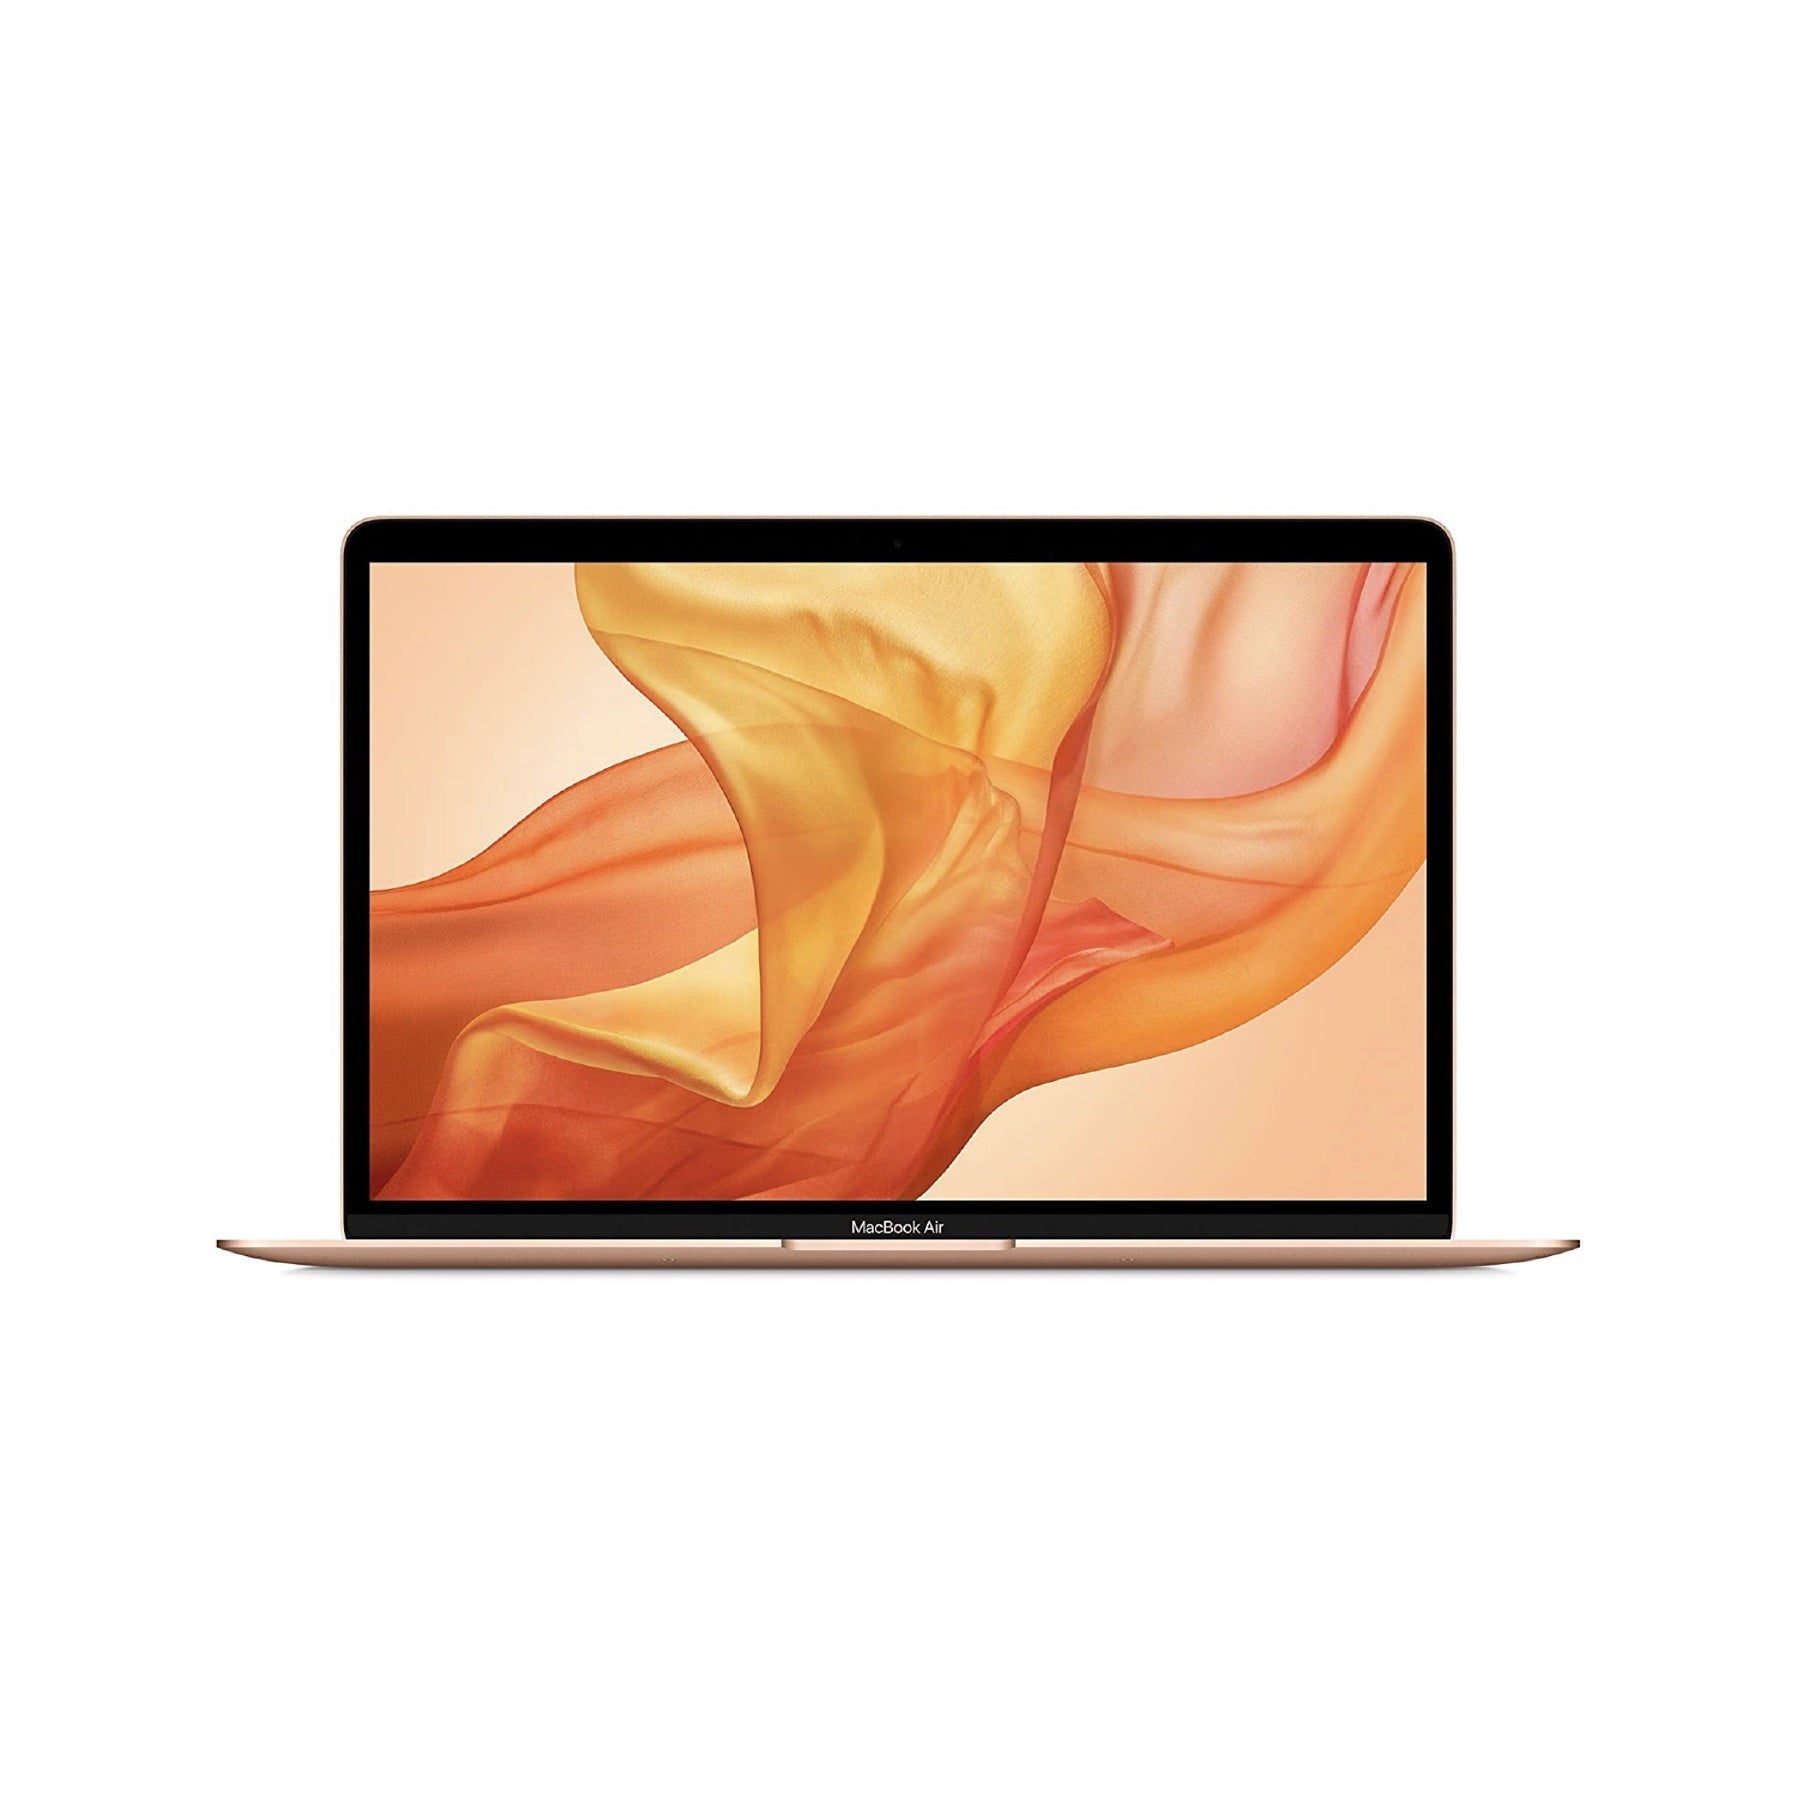 MacBook Air (Retina, 13-inch, 2020) 1.1GHz, Intel Core i3 256GB - Gold